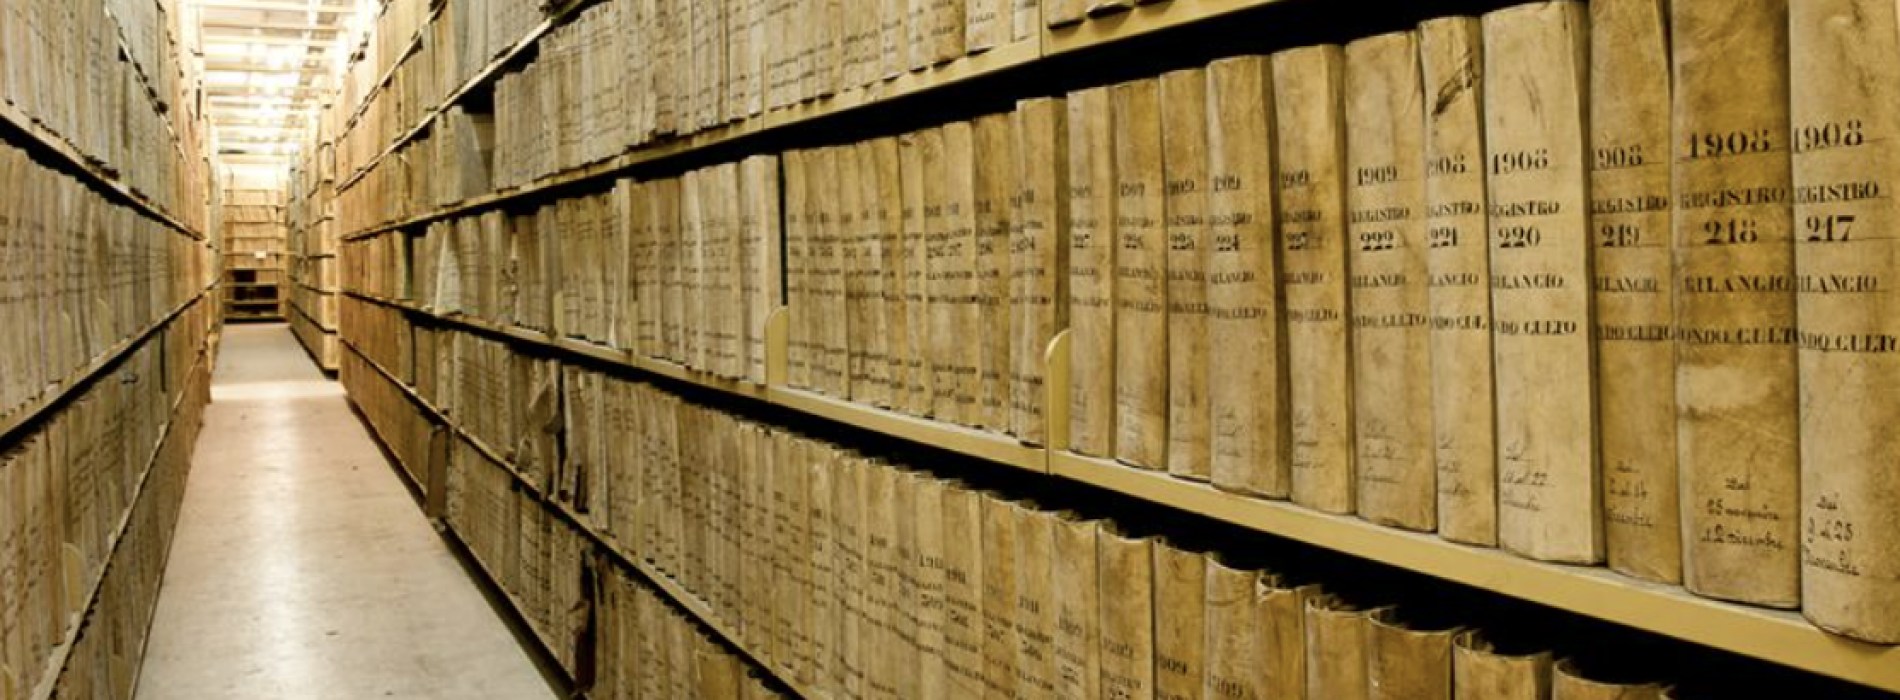 Sette archivisti in Campania, pubblicato il bando del Ministero